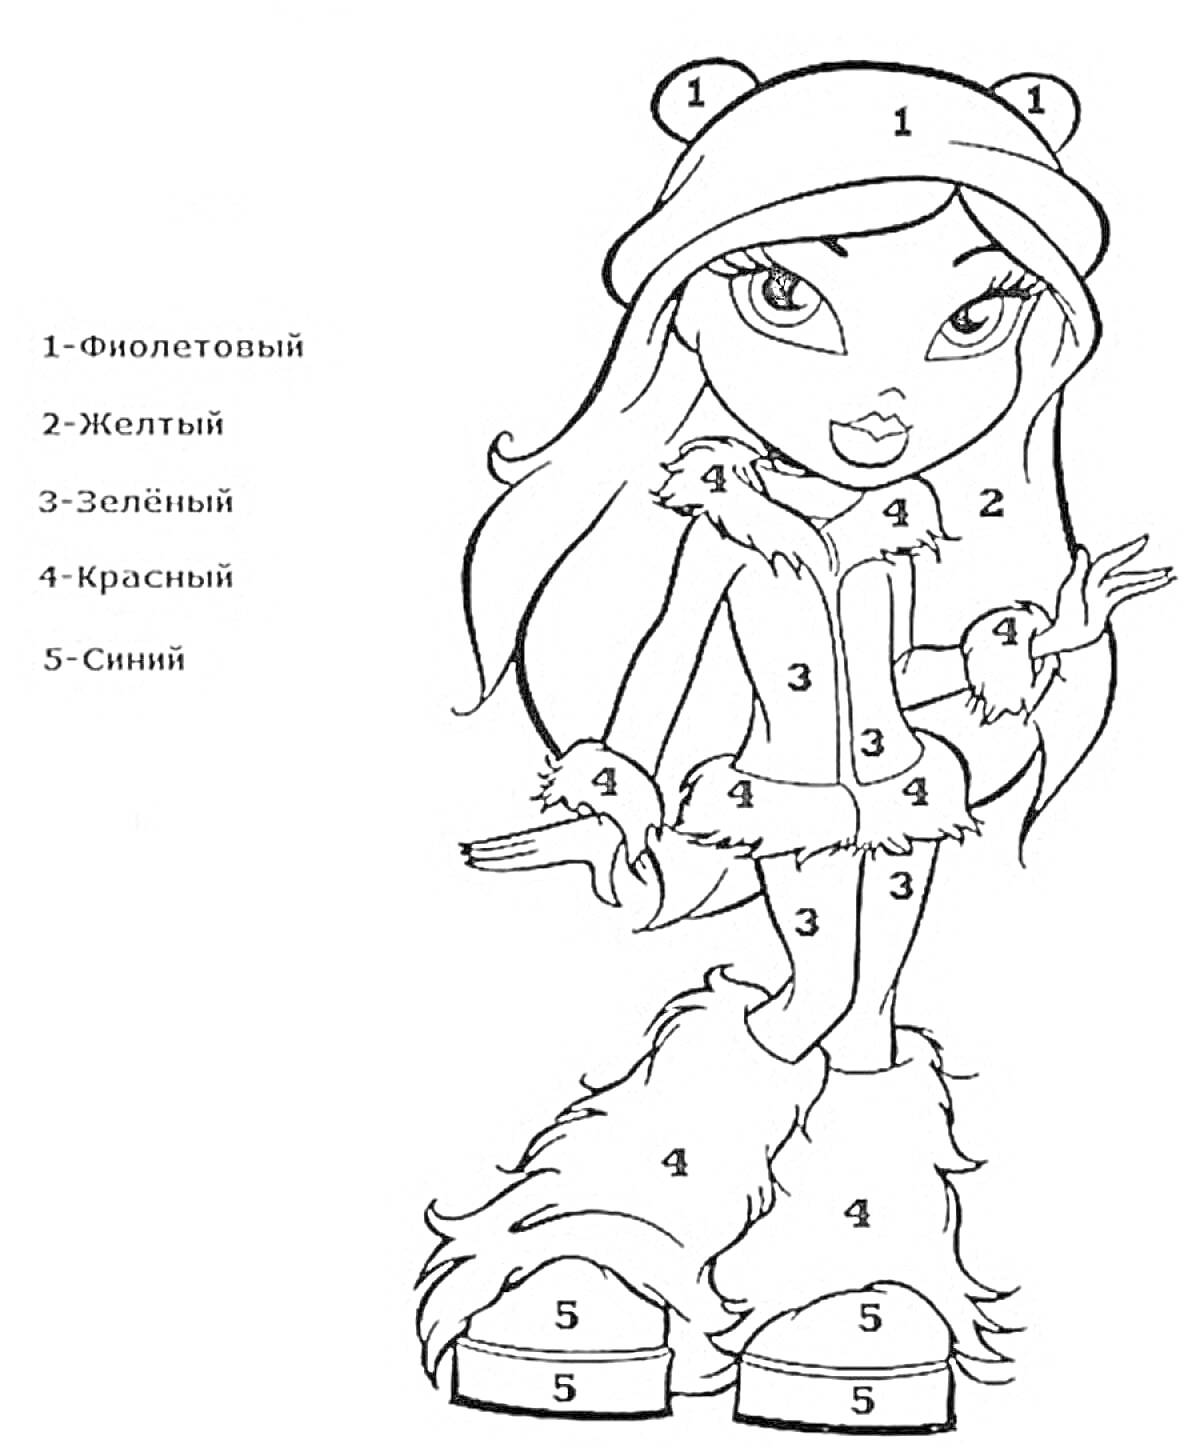 Раскраска Девушка в шапке с медвежьими ушками, куртке с мехом, варежках, штанах и сапогах с мехом.